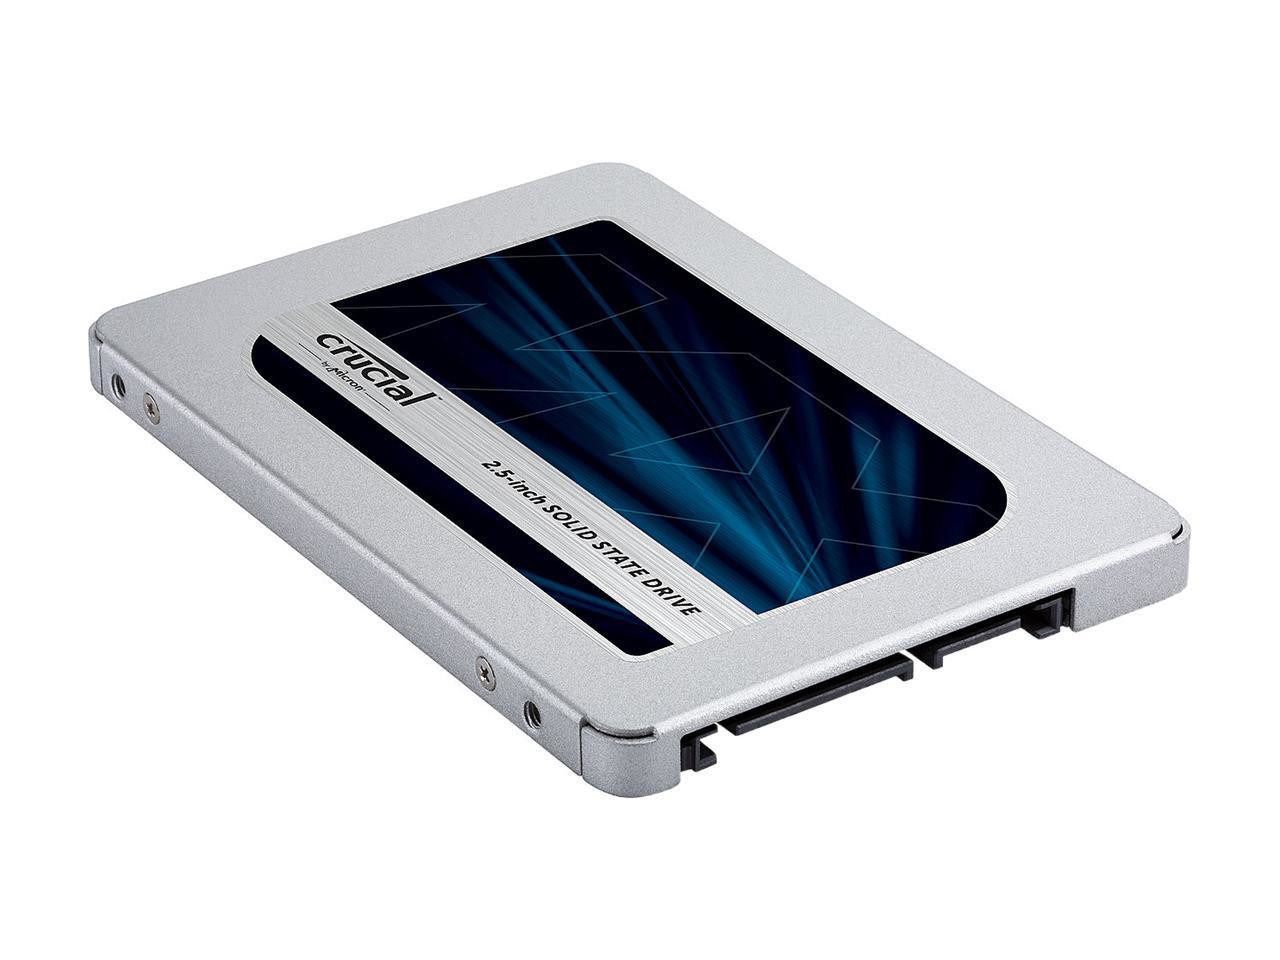 Immagine pubblicata in relazione al seguente contenuto: Crucial introduce la linea di SSD MX500 con memoria 3D NAND di Micron | Nome immagine: news27660_Crucial-SSD-MX500_1.jpg